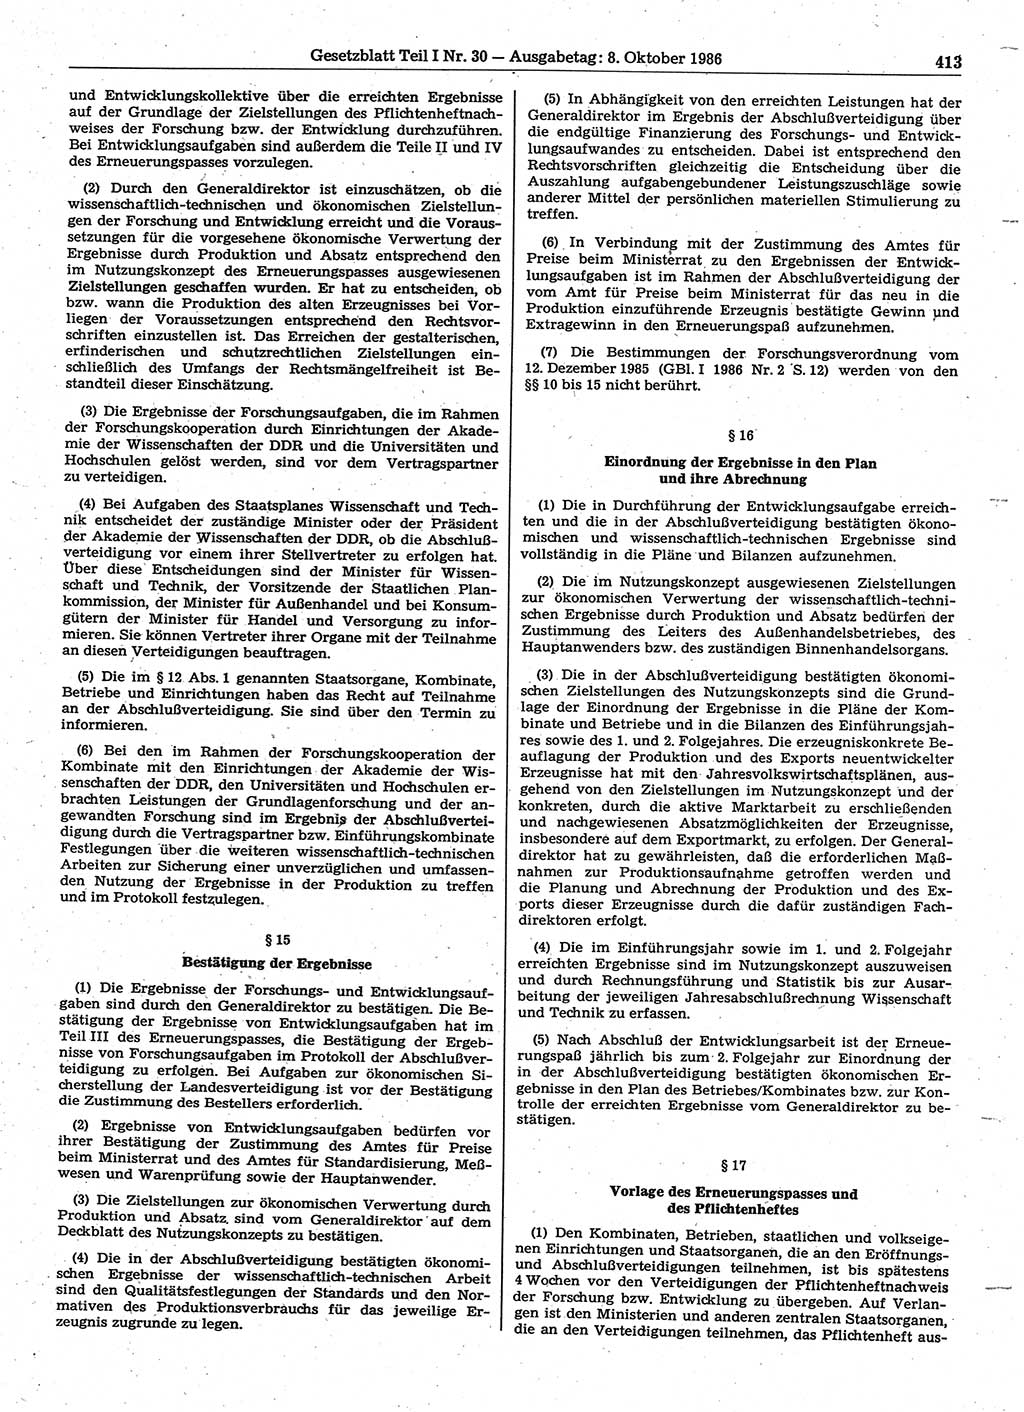 Gesetzblatt (GBl.) der Deutschen Demokratischen Republik (DDR) Teil Ⅰ 1986, Seite 413 (GBl. DDR Ⅰ 1986, S. 413)